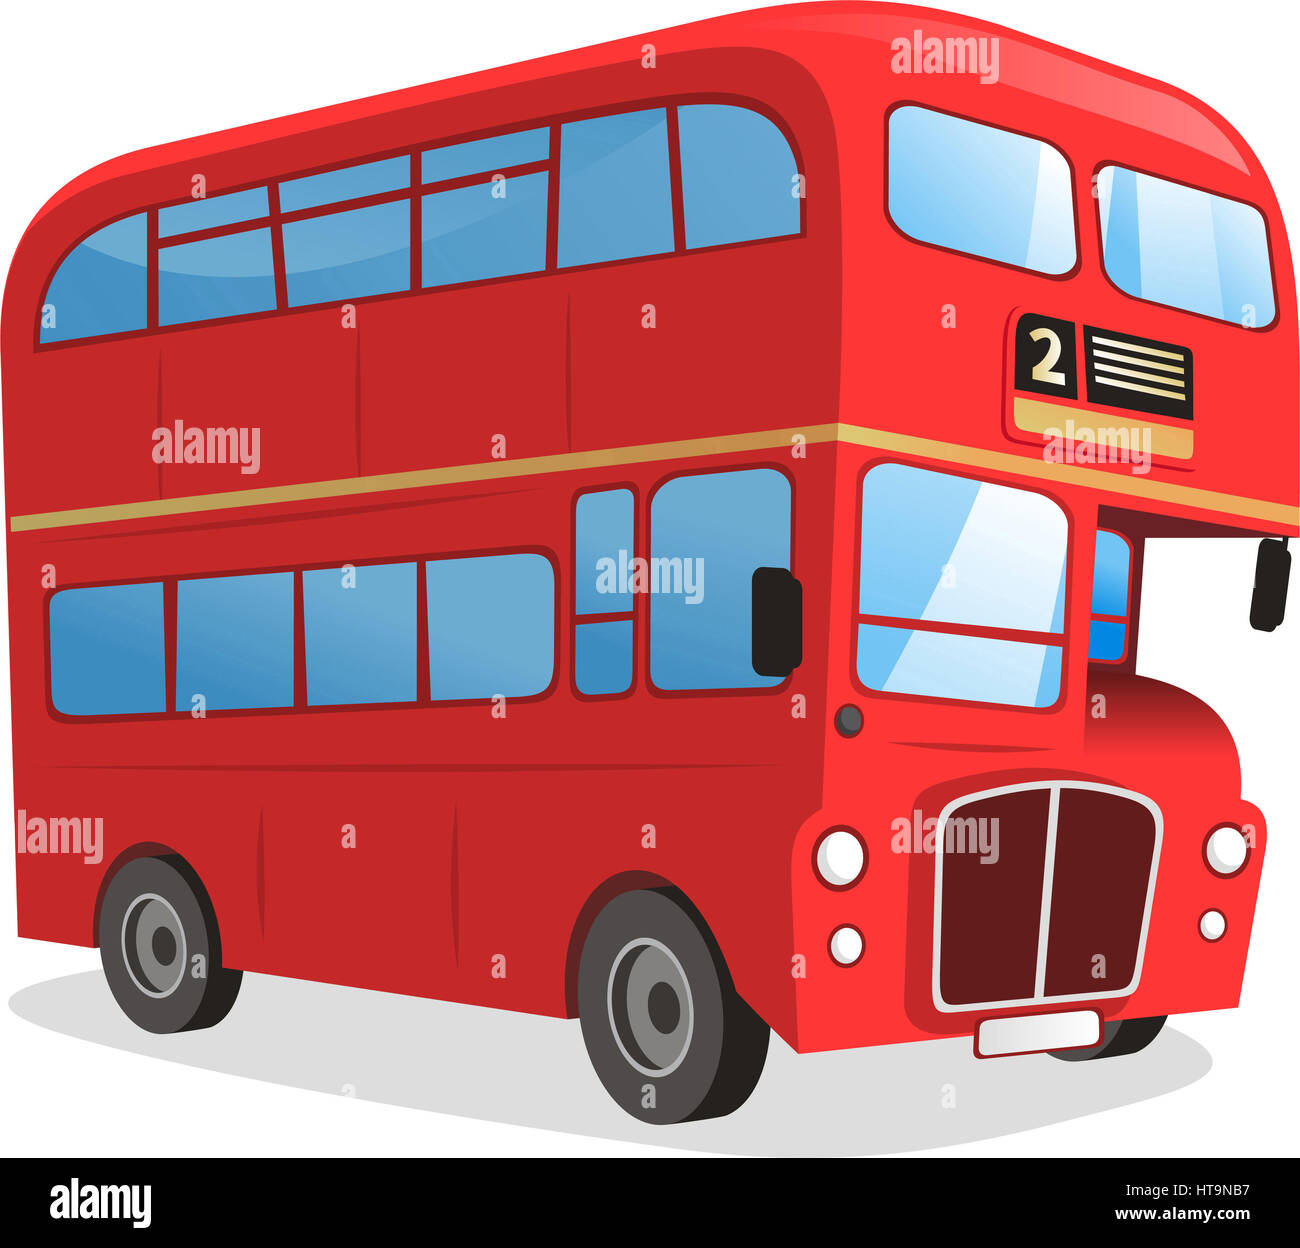 London Double Decker Bus Cartoon illustration Stockfoto